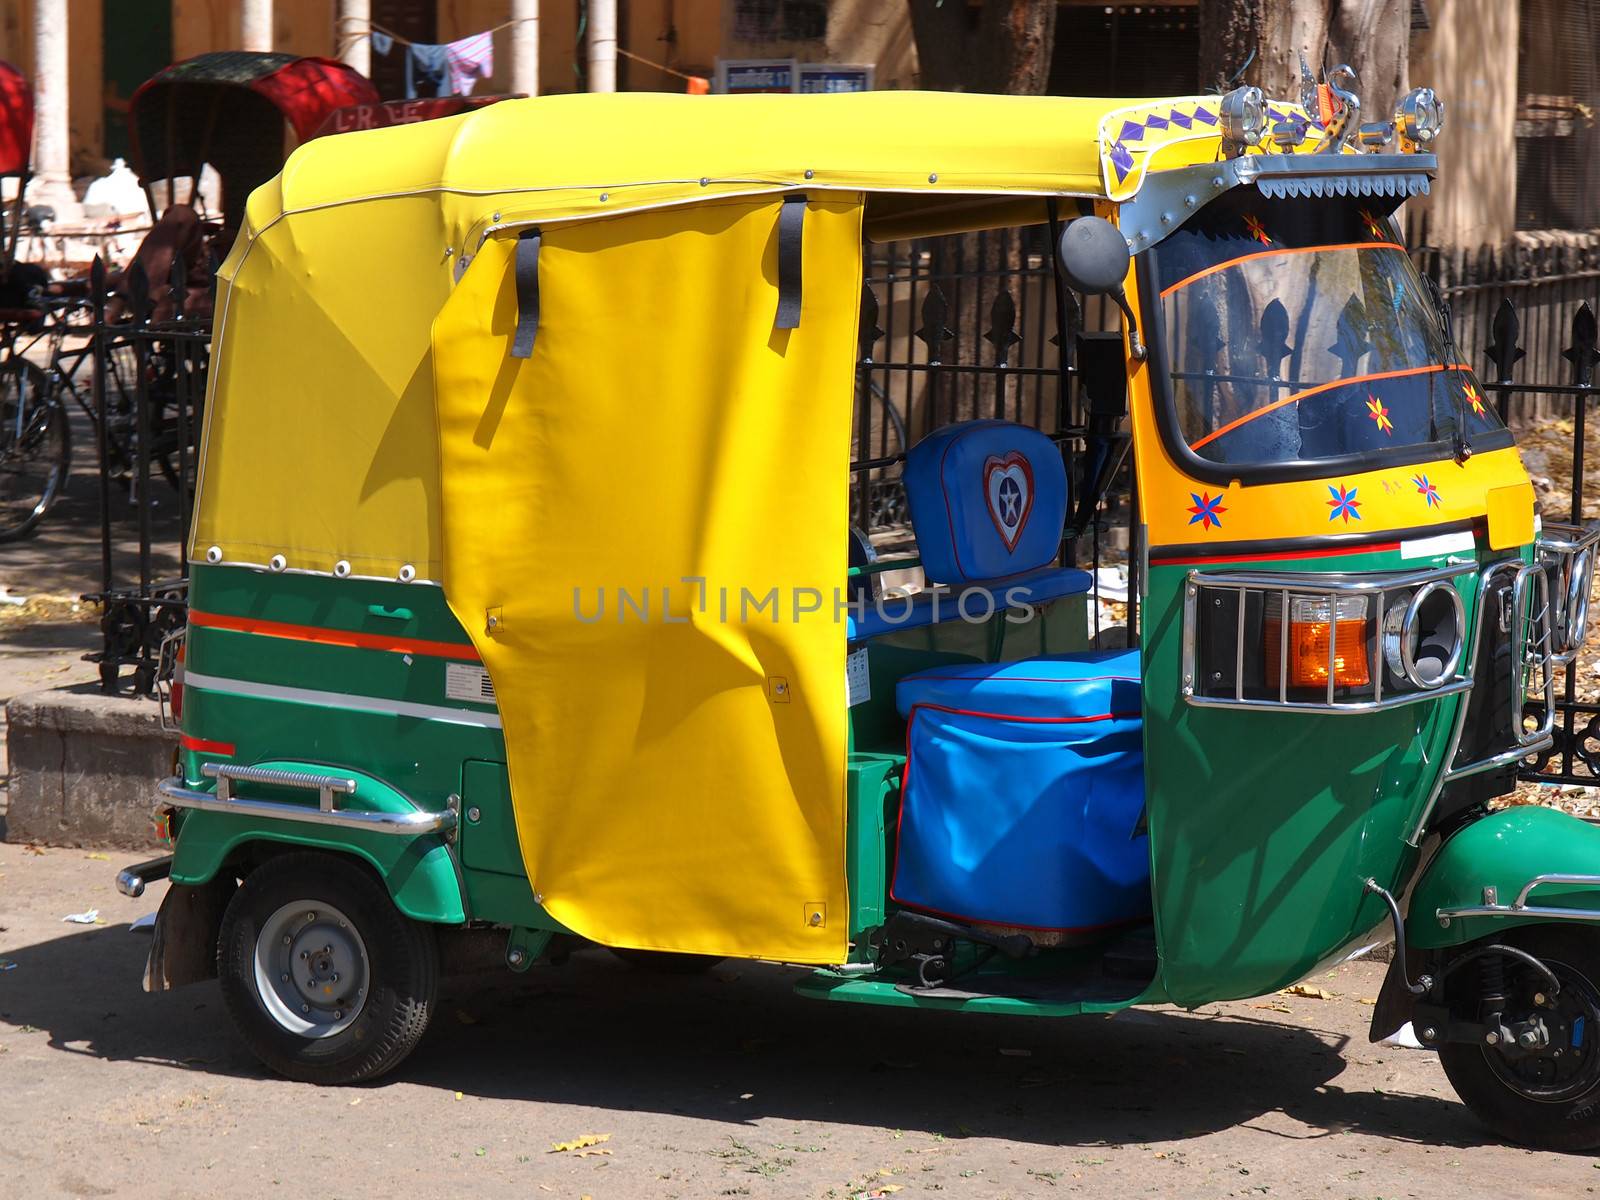 rickshaw by nevenm